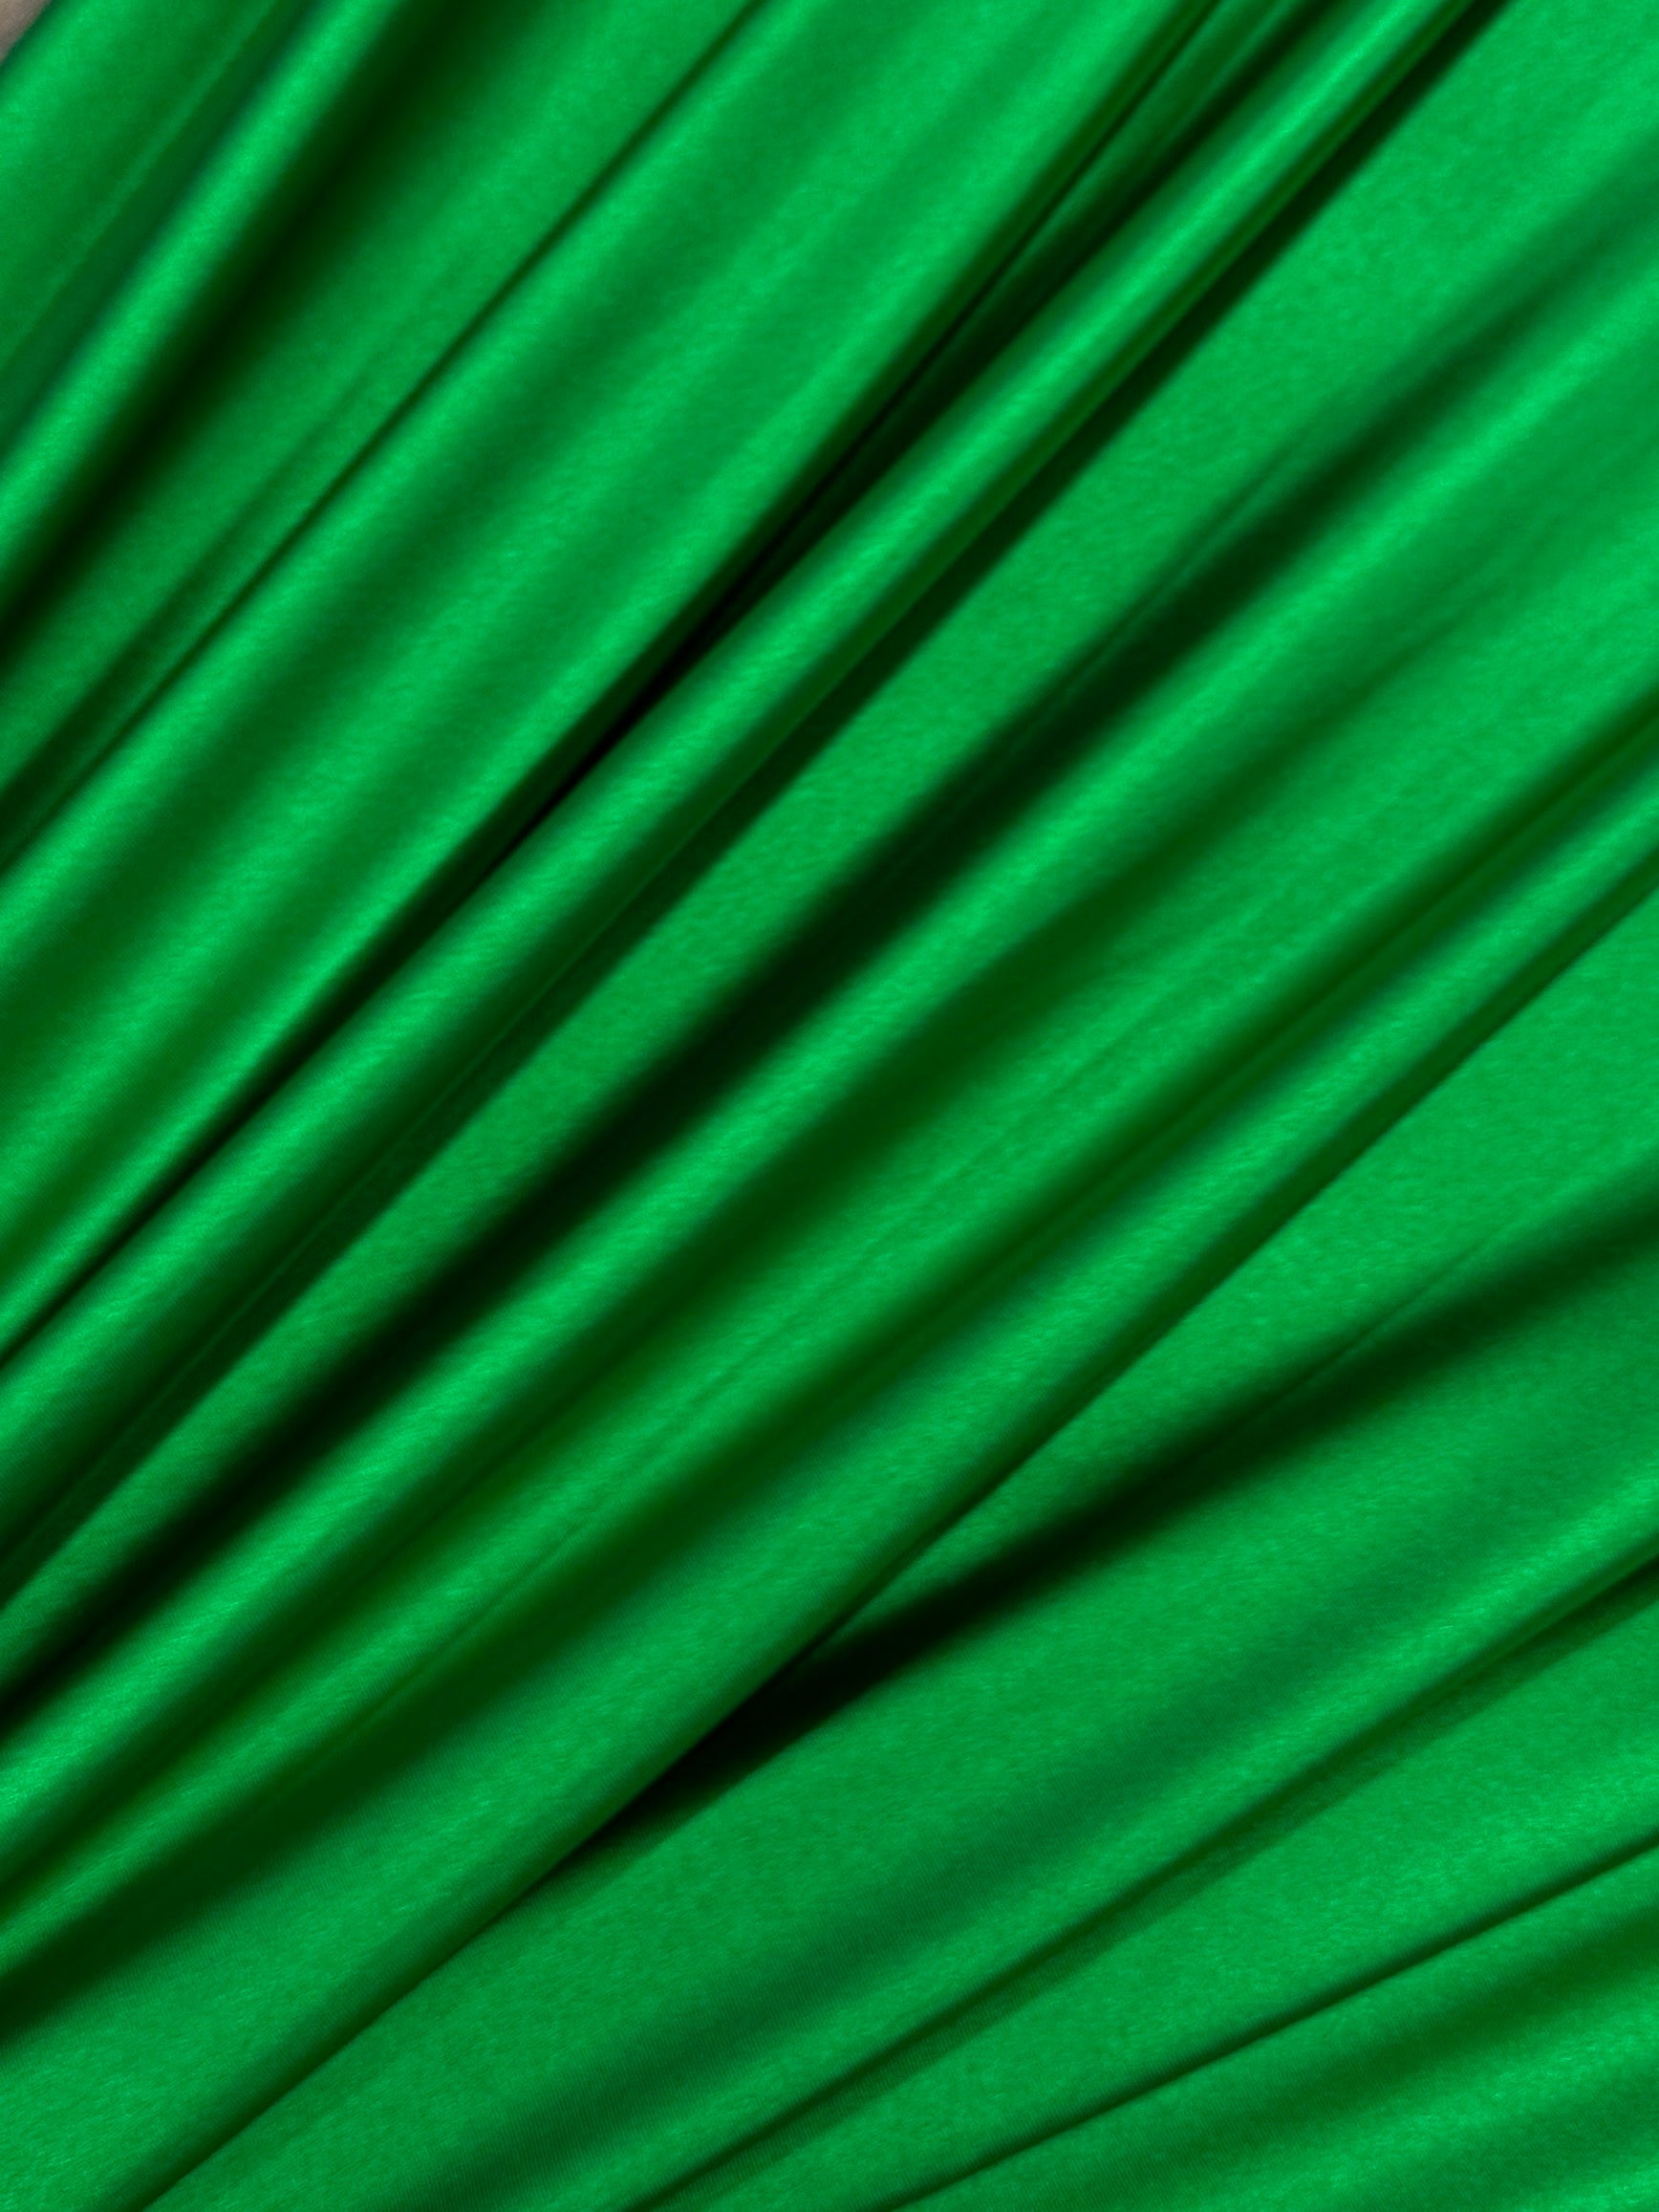 emrald green nylon spandex, dark green nylon spandex, light green spandex, lime green nylon spandex, khaki green shiny nylon spandex for woman, shiny nylon for bride, spandex for swim wear, premium spandex, spandex on sale, low price spandex